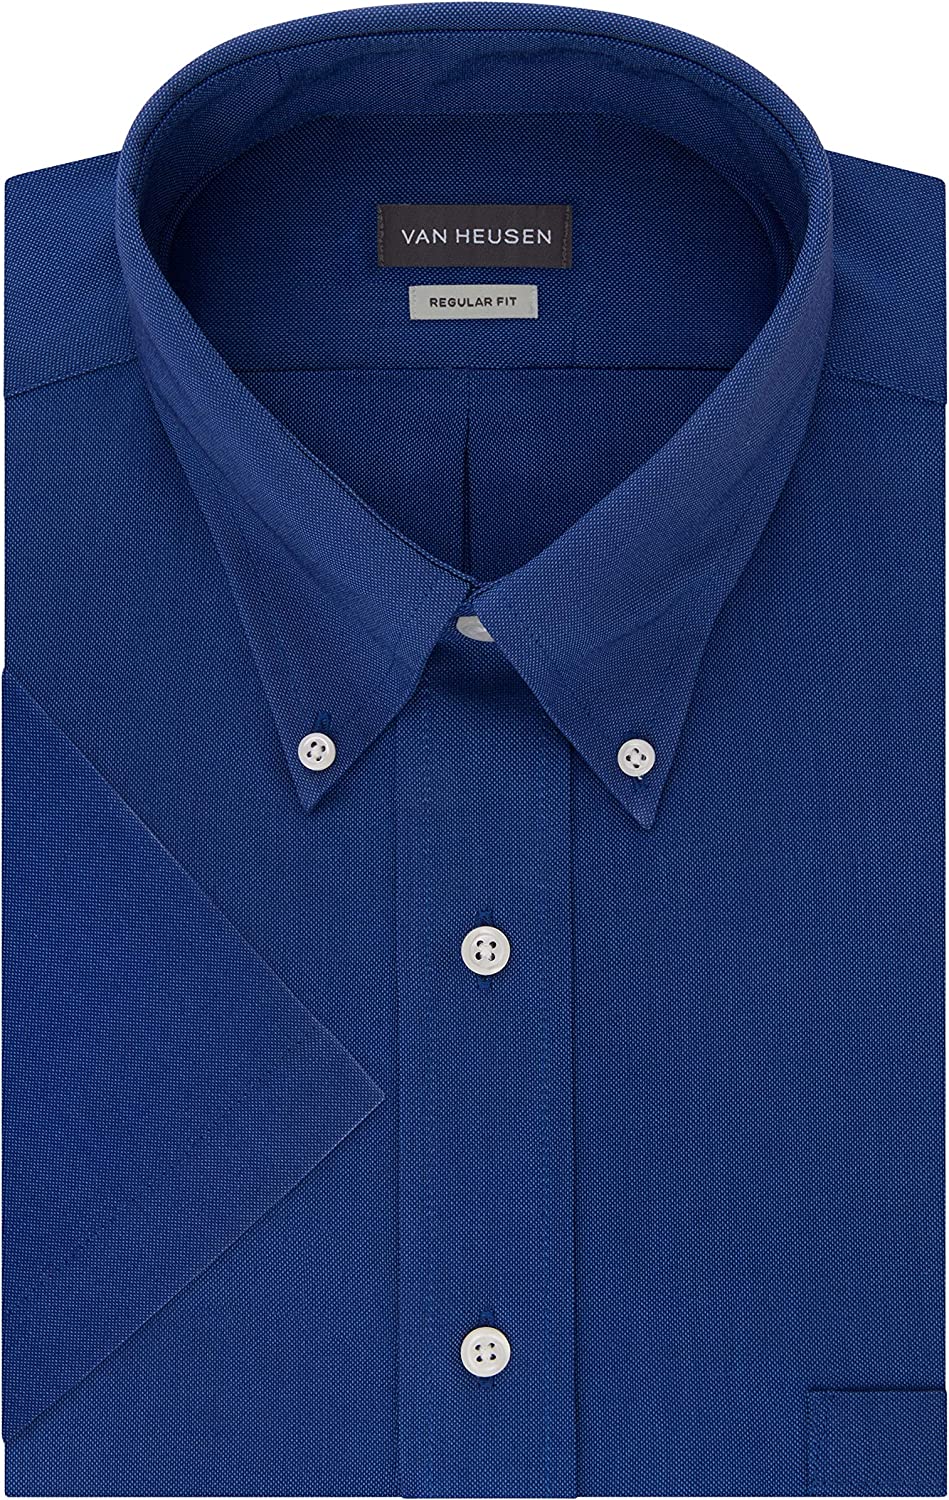 Heusen Men's Short Sleeve Dress Shirt Regular Fit Oxford Solid